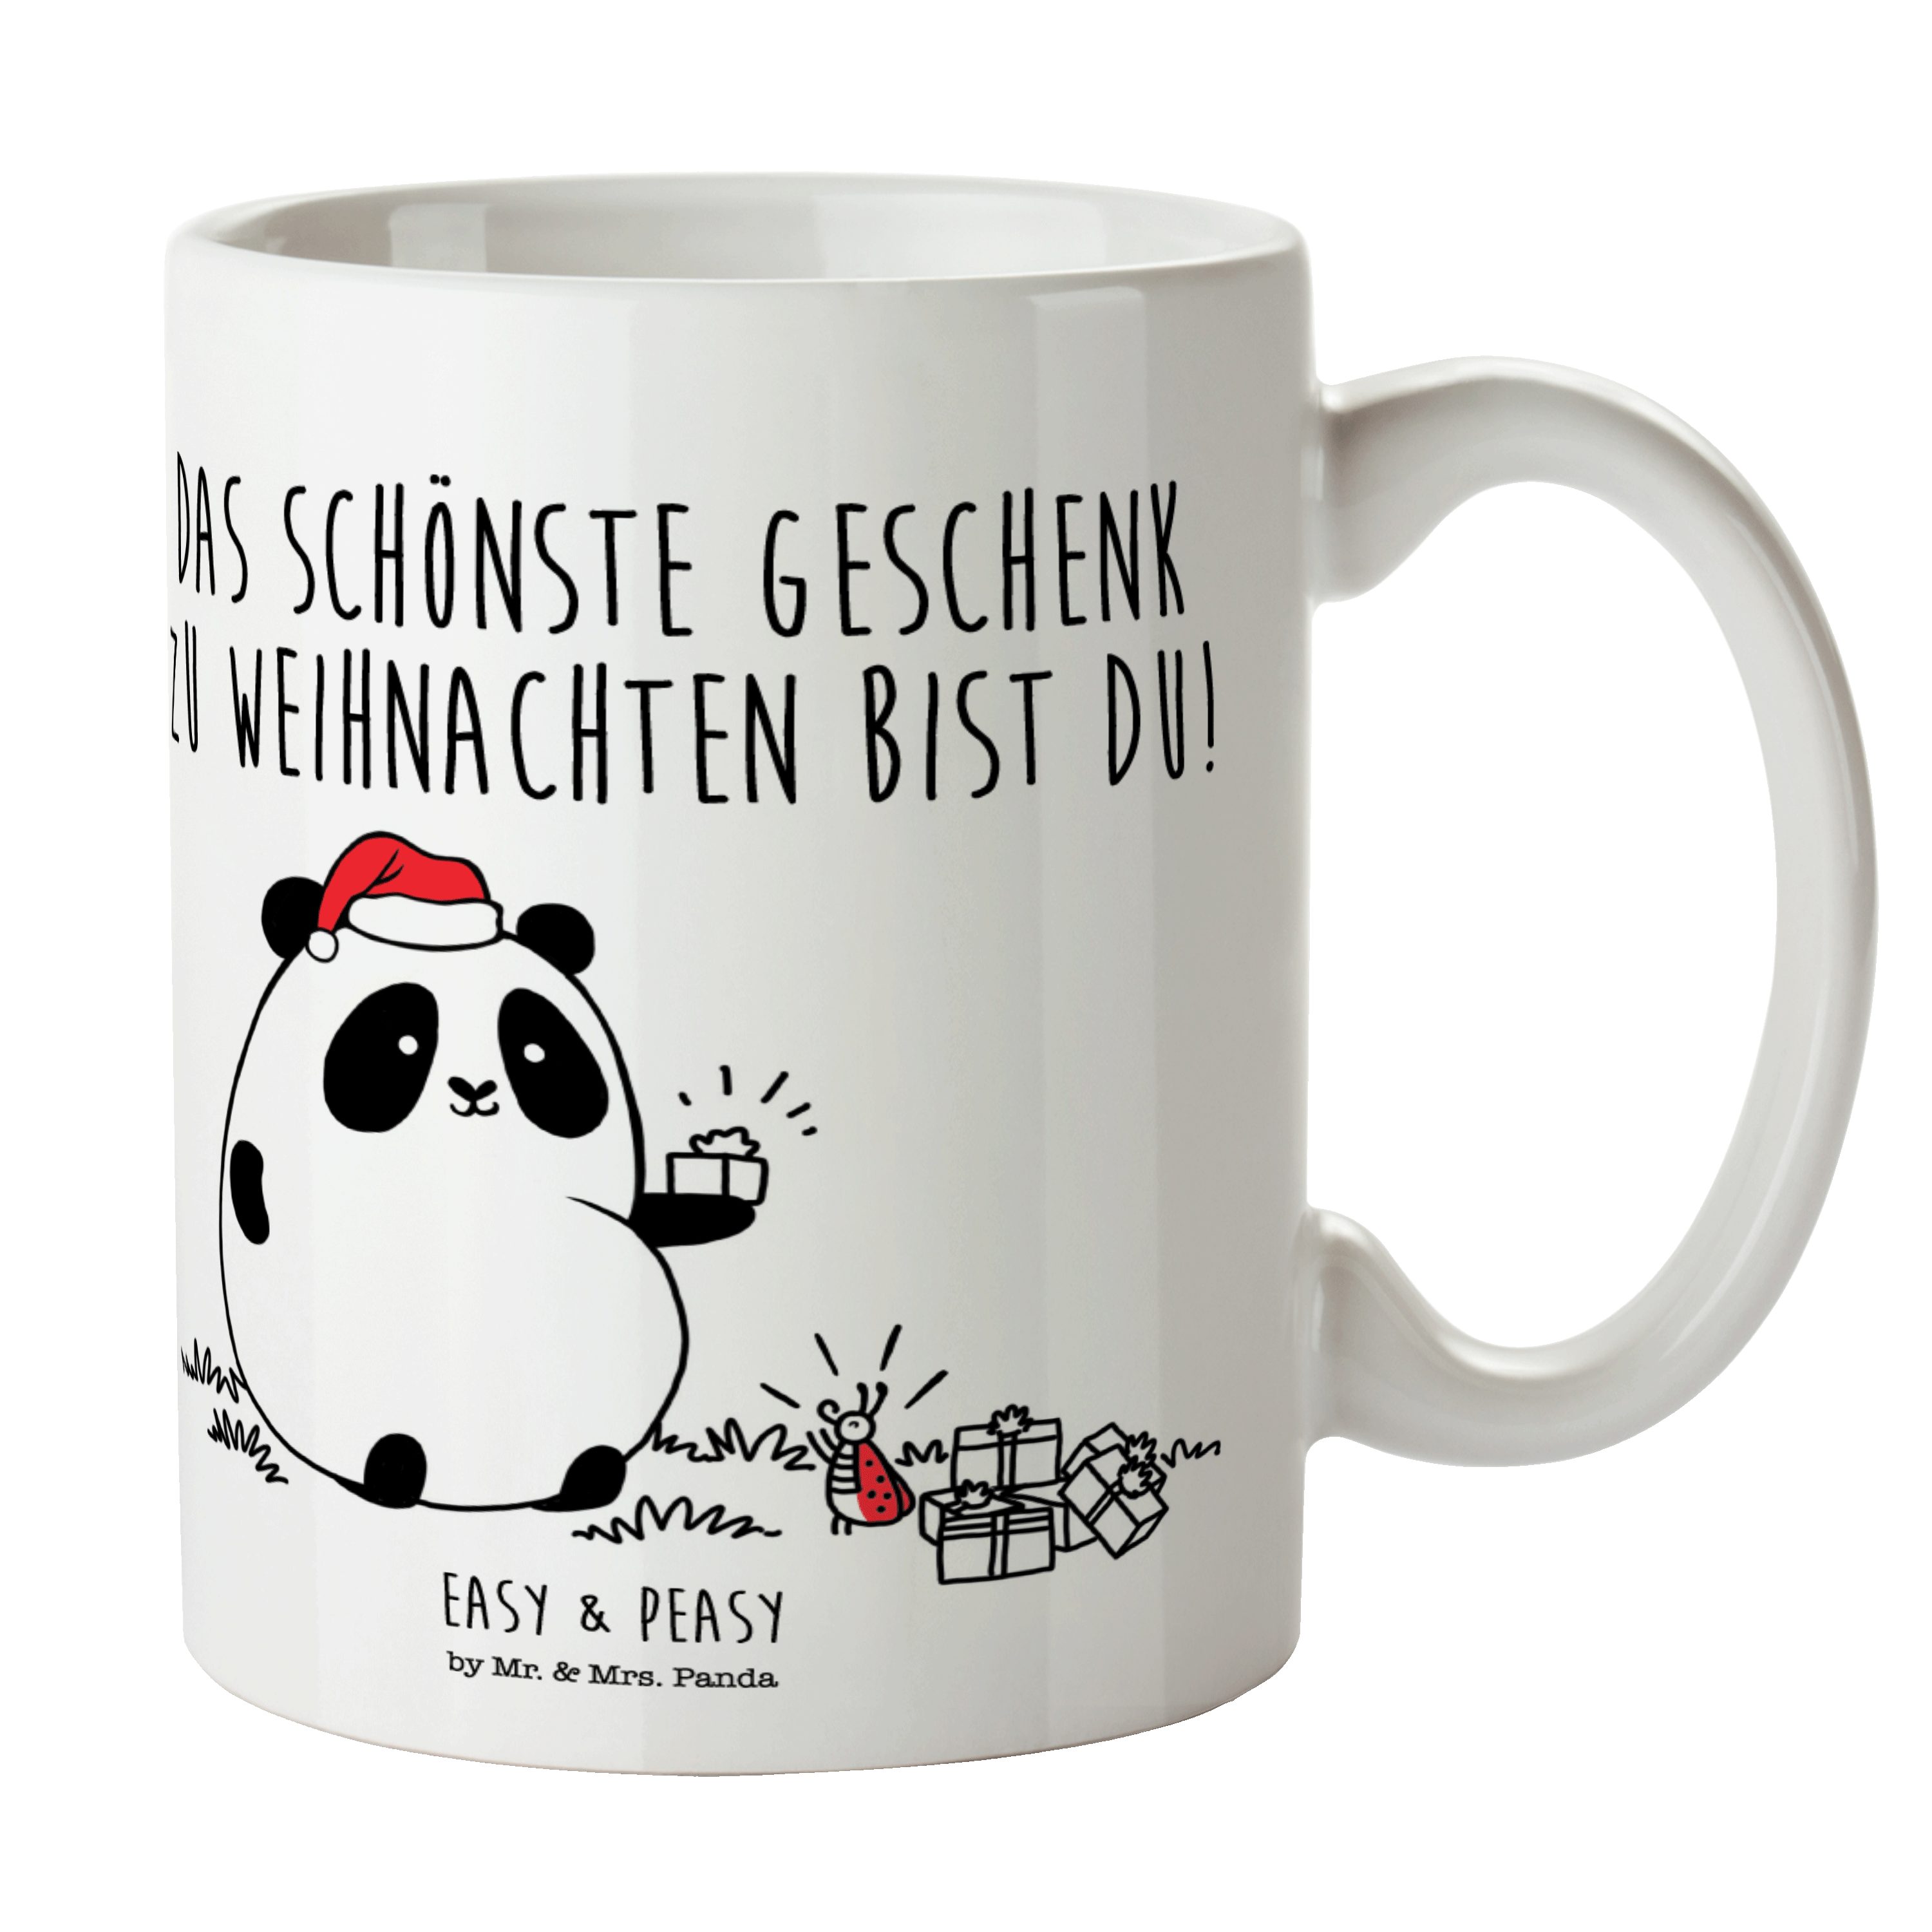 Mr. & Mrs. Panda Tasse Easy & Peasy Weihnachtsgeschenk - Weiß - Teebecher, Tasse Sprüche, Po, Keramik